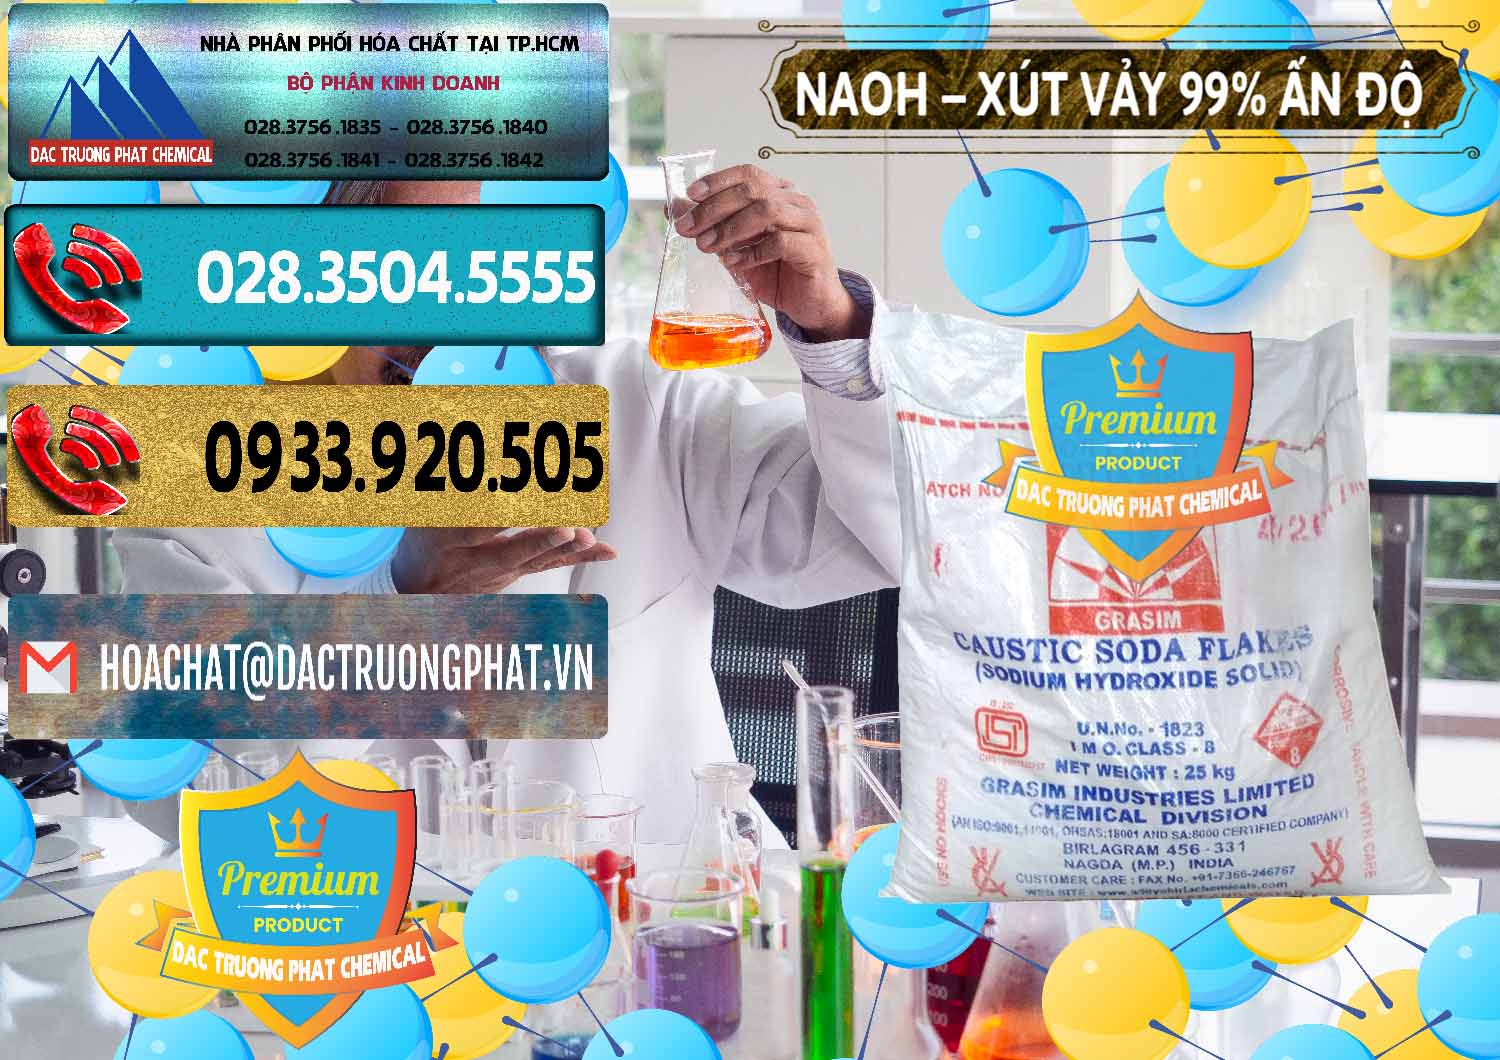 Cty chuyên kinh doanh & bán Xút Vảy - NaOH Vảy 99% Aditya Birla Grasim Ấn Độ India - 0171 - Nhà cung cấp và kinh doanh hóa chất tại TP.HCM - hoachatdetnhuom.com